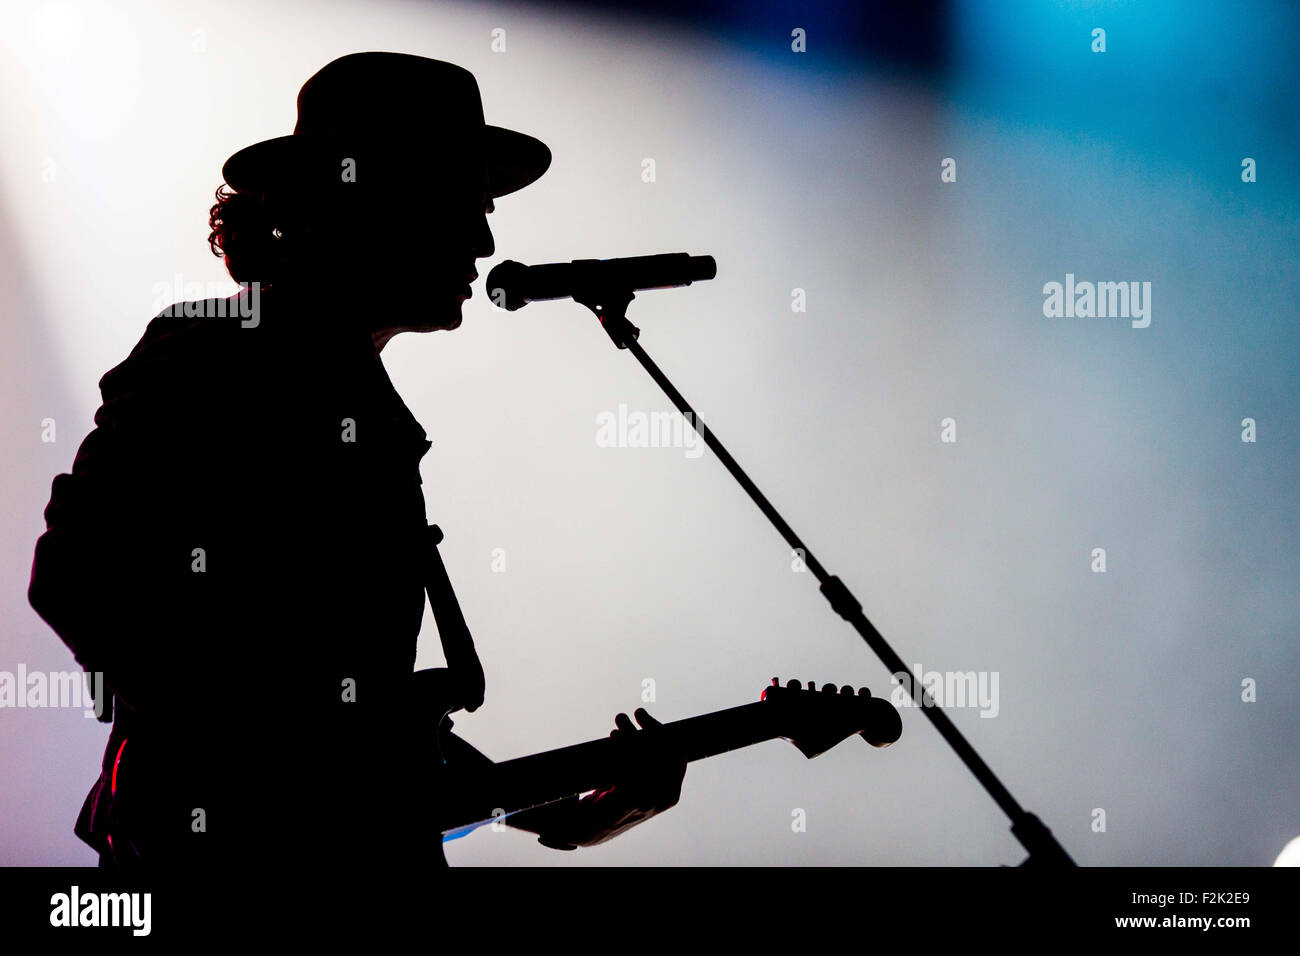 19/9/15 Concert de Liverpool avec amour. Silhouette d'un guitariste sur scène Banque D'Images